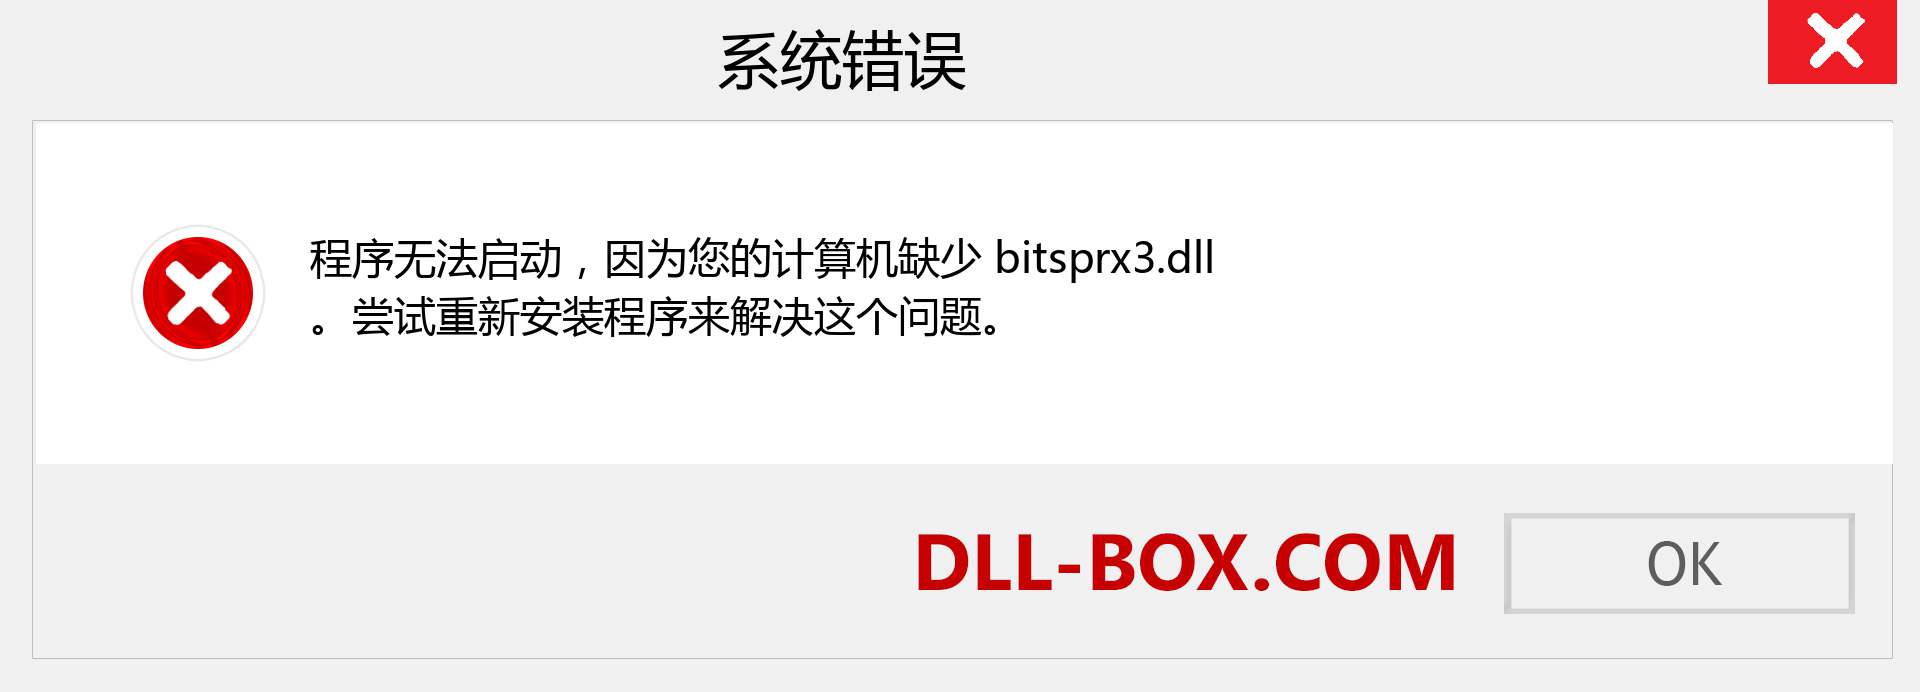 bitsprx3.dll 文件丢失？。 适用于 Windows 7、8、10 的下载 - 修复 Windows、照片、图像上的 bitsprx3 dll 丢失错误